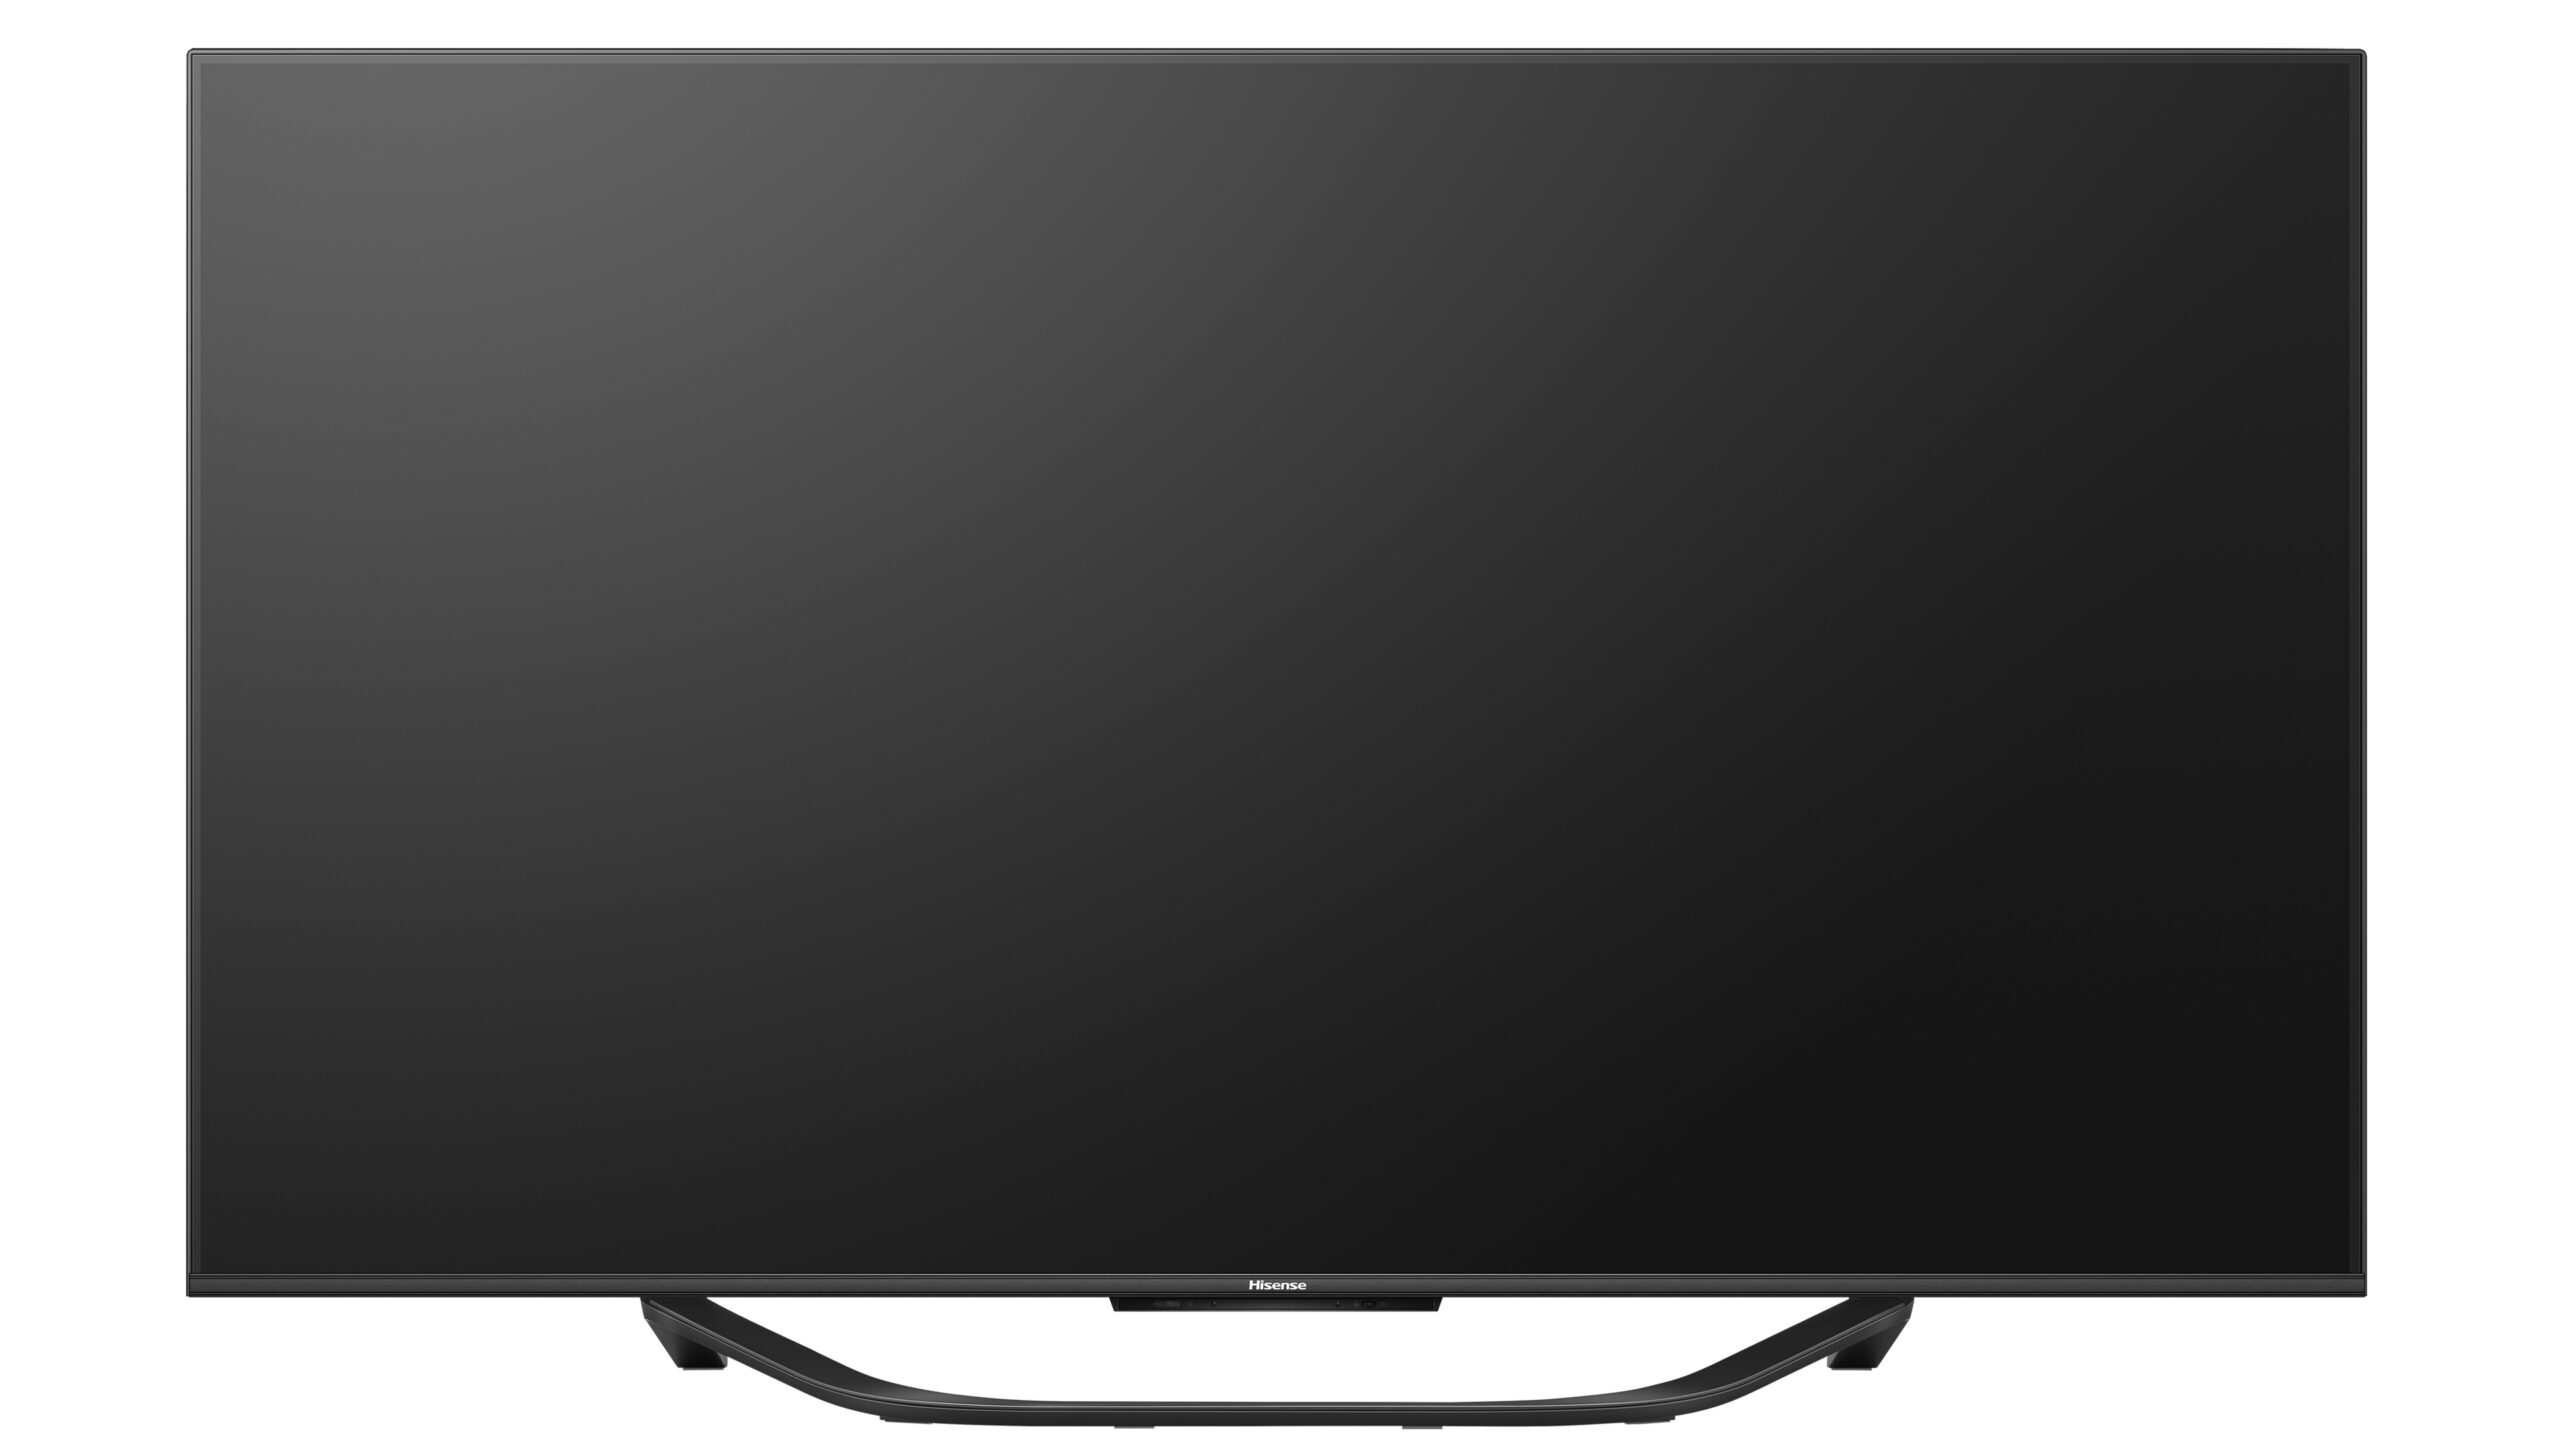 Hisense - Mini LED TV 65U7KQ